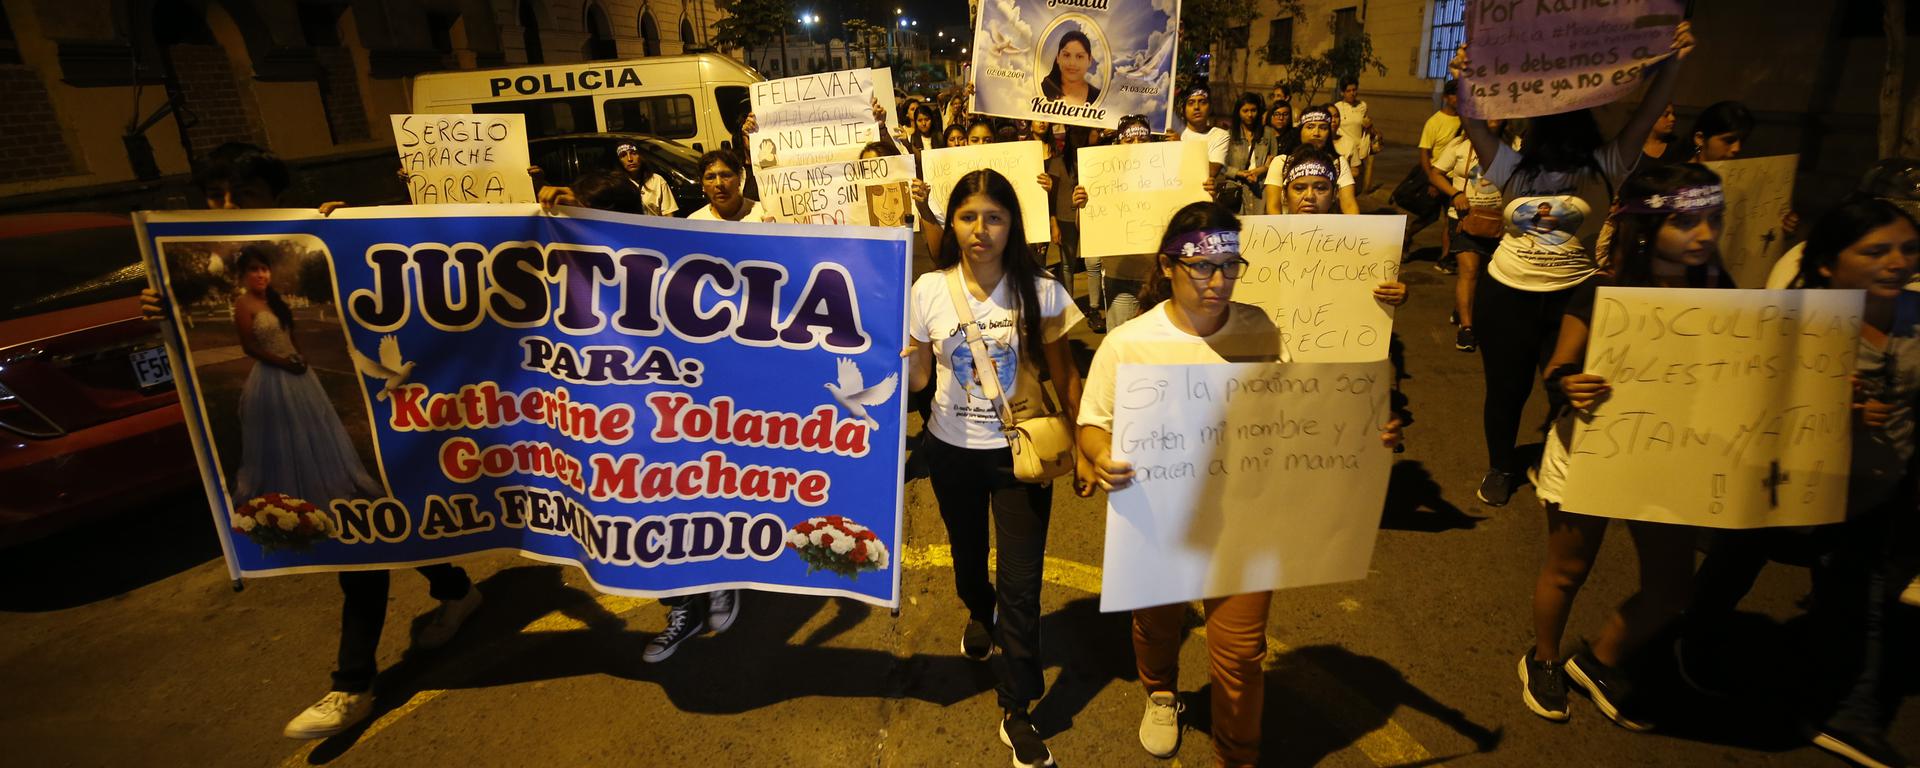 Violencia contra la mujer: el tema ausente en el discurso de la primera presidenta del Perú